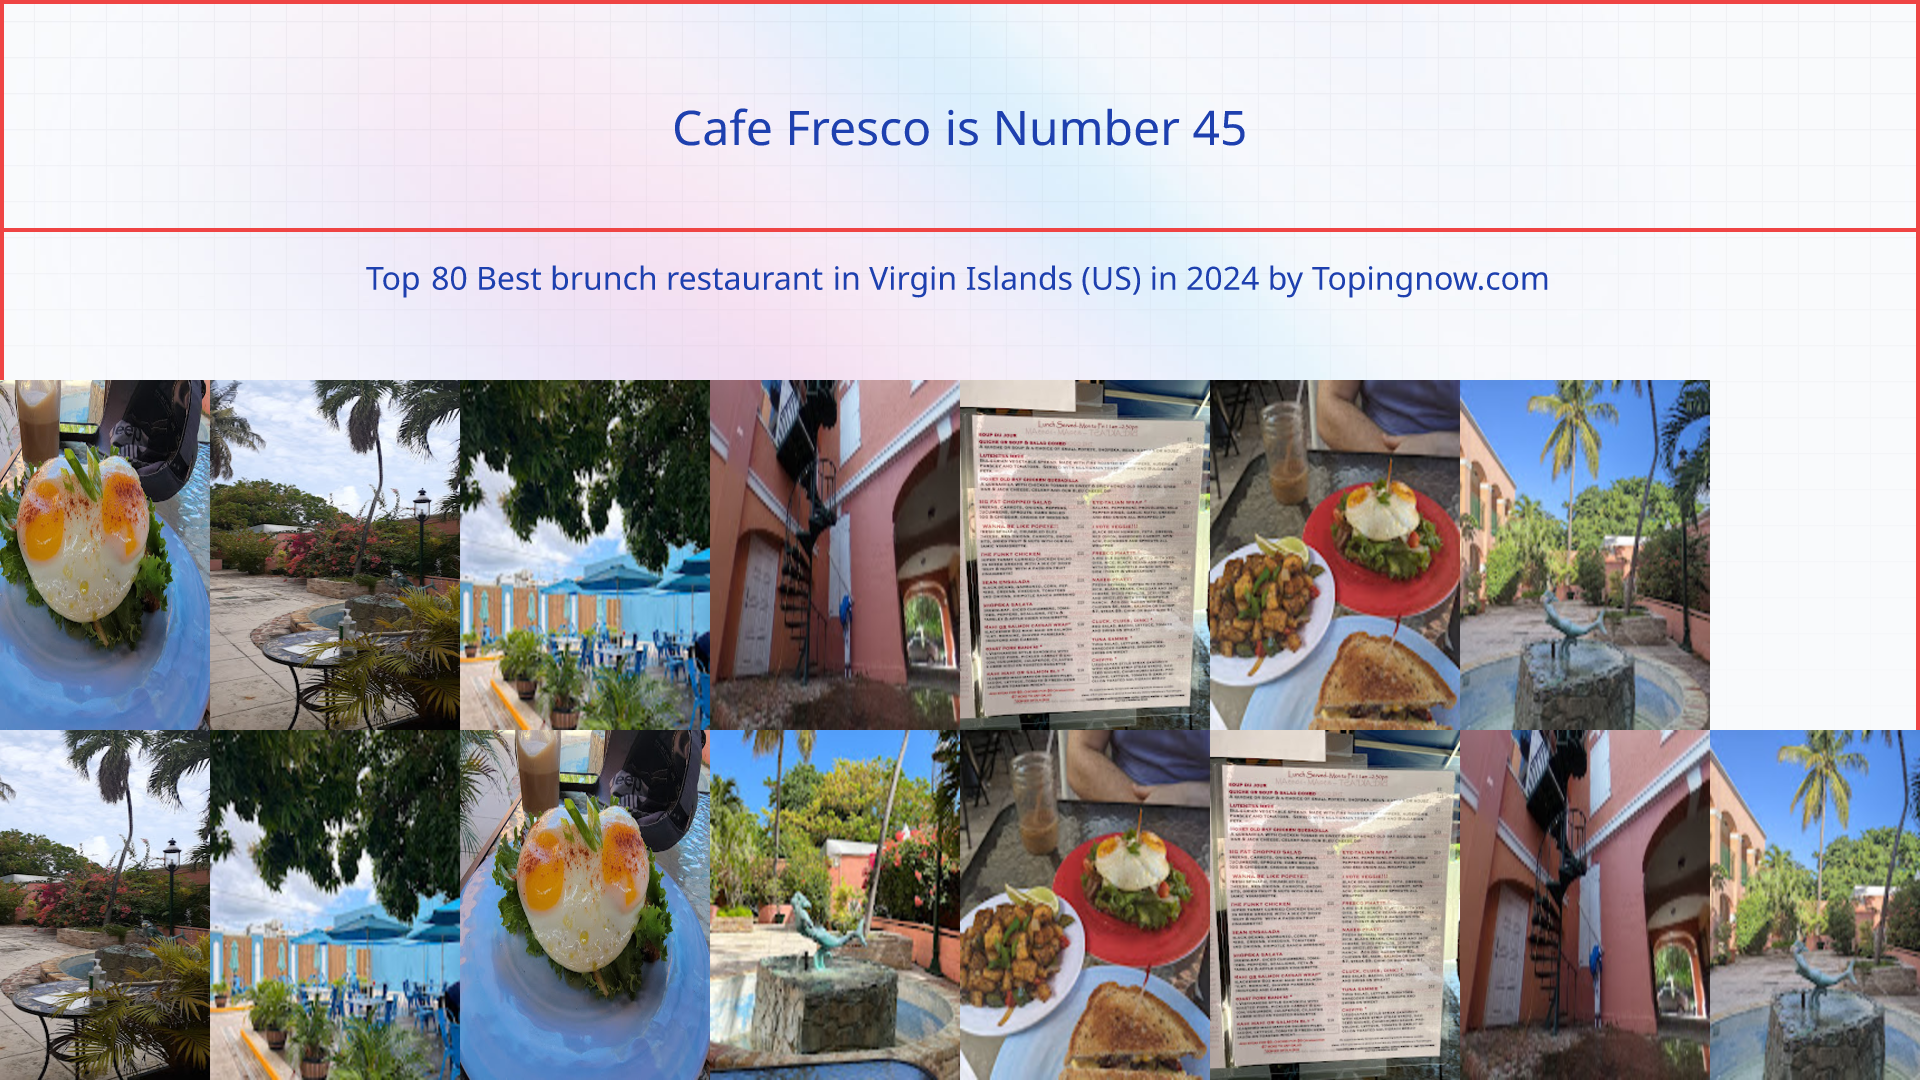 Cafe Fresco: Top 80 Best brunch restaurant in Virgin Islands (US) in 2024